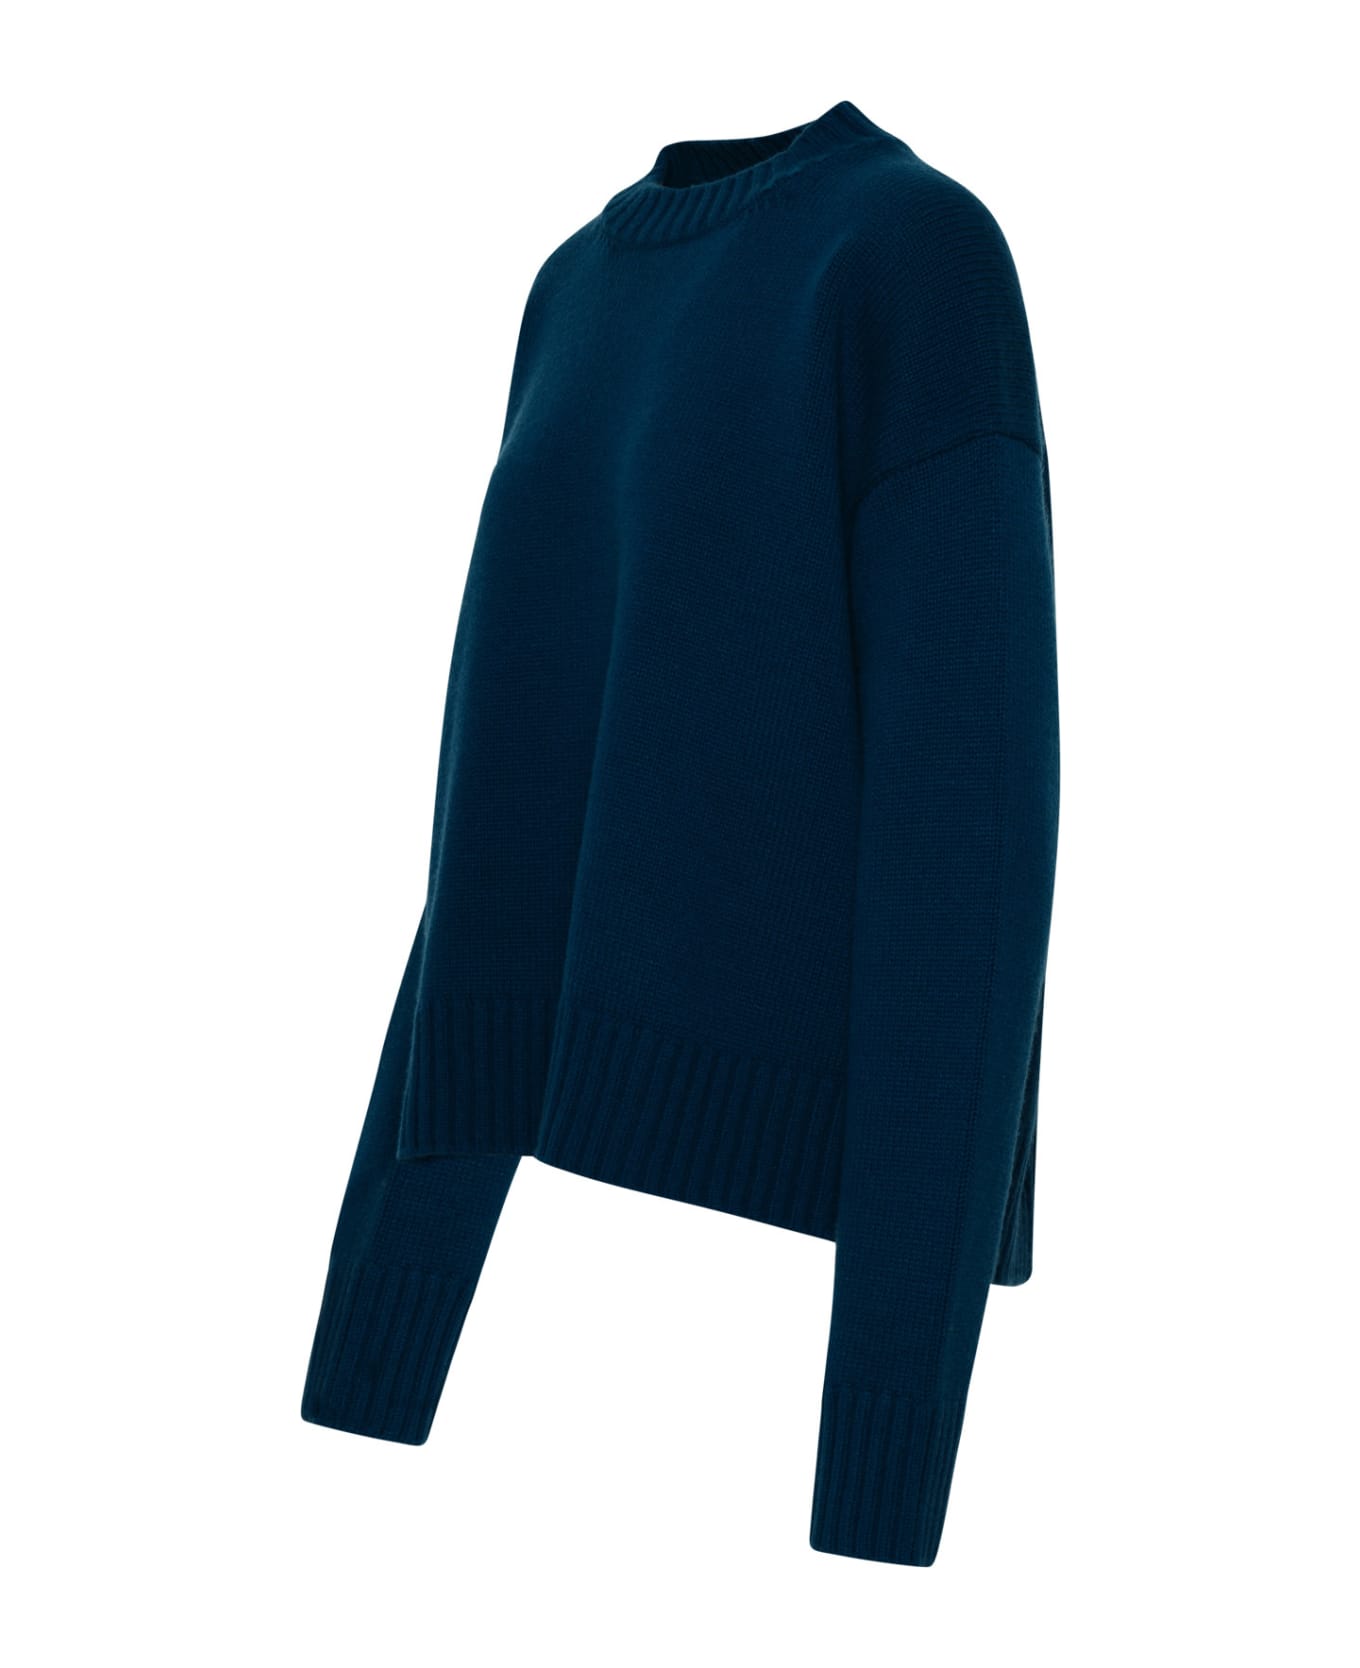 Jil Sander Sweater In Blue Cashmere Blend - Blue ニットウェア